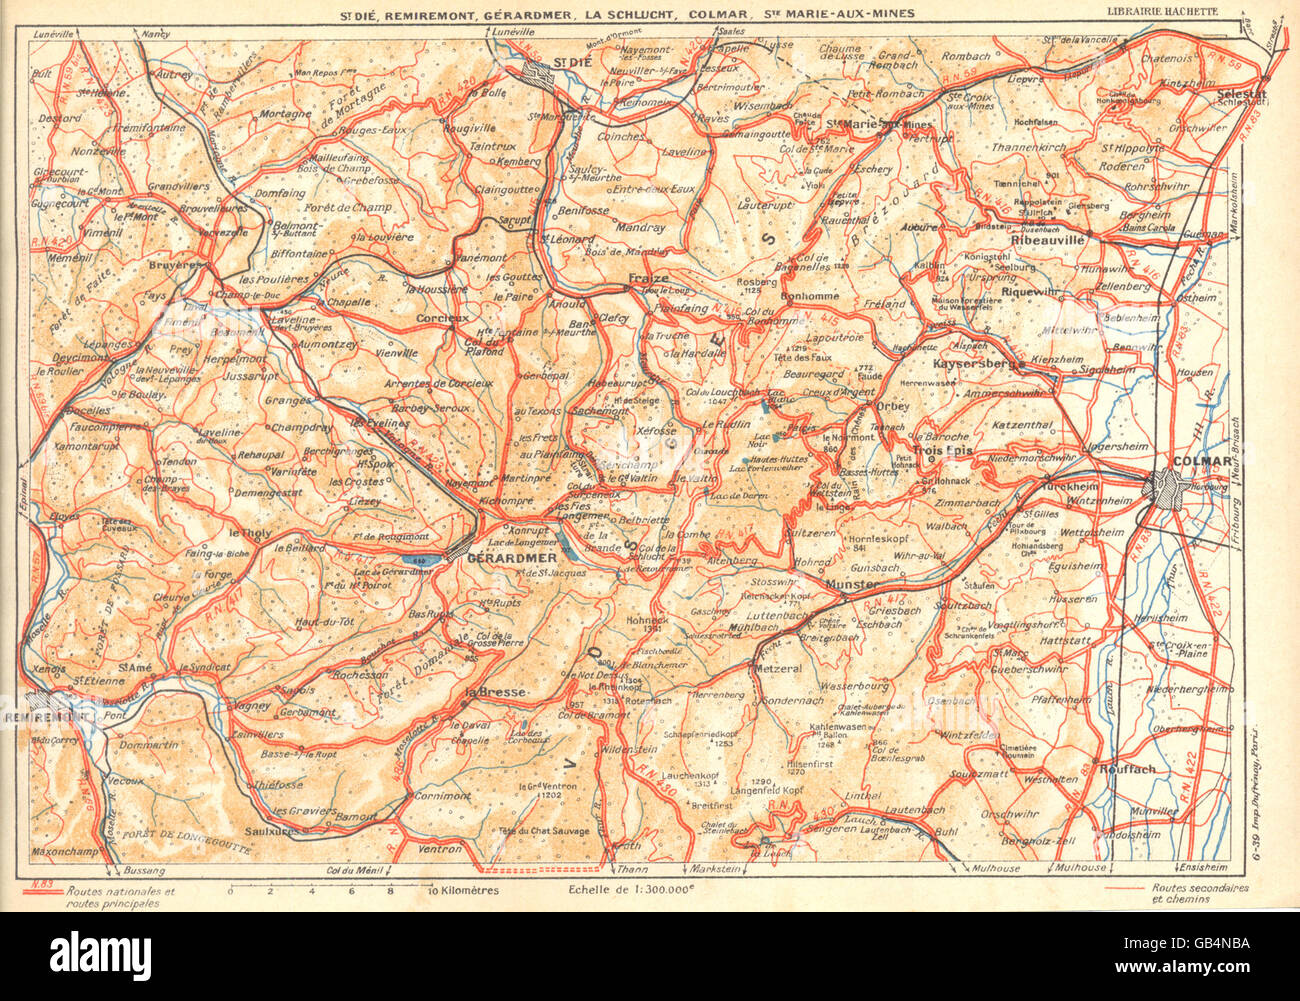 VOSGES:San Dié,Remiremont,Gérardmer,Schlucht,Colmar,Ste Marie--Mines, 1939 mapa Foto de stock